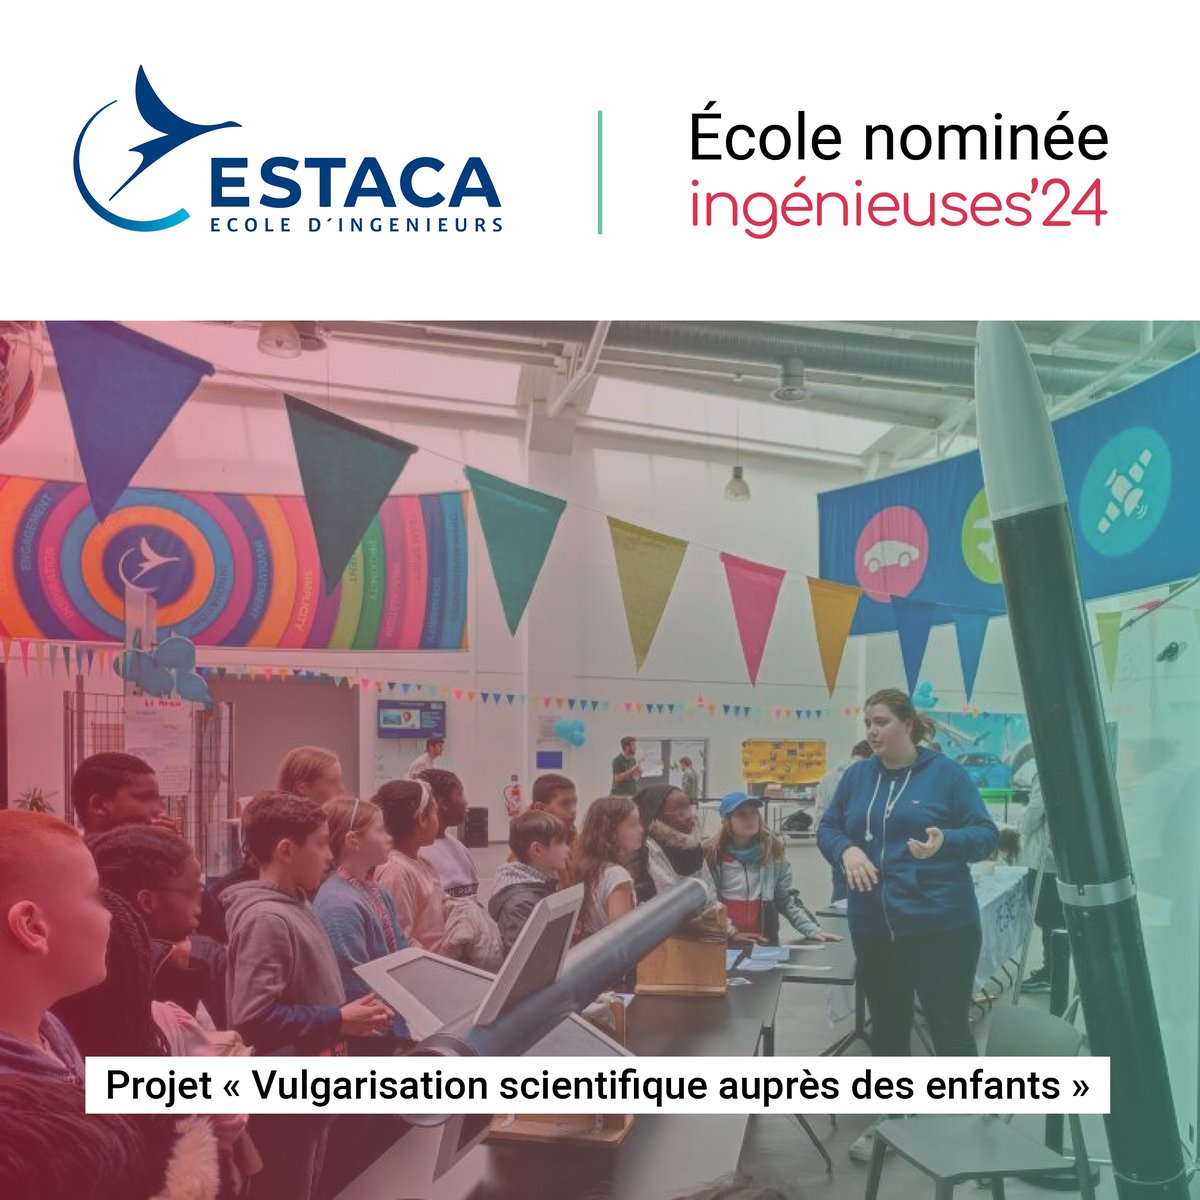 #Ingénieuses2024 Notre 1re école nominée est l'@Estaca_twit, pour son projet « Vulgarisation scientifique auprès des enfants » porté par l'association étudiante PEGASE. Découvrez le projet 👉 ingenieuses.fr/2024/04/19/vul… Et rdv le 16 mai pour la cérémonie 👉 cdefi.fr/fr/evenements/…